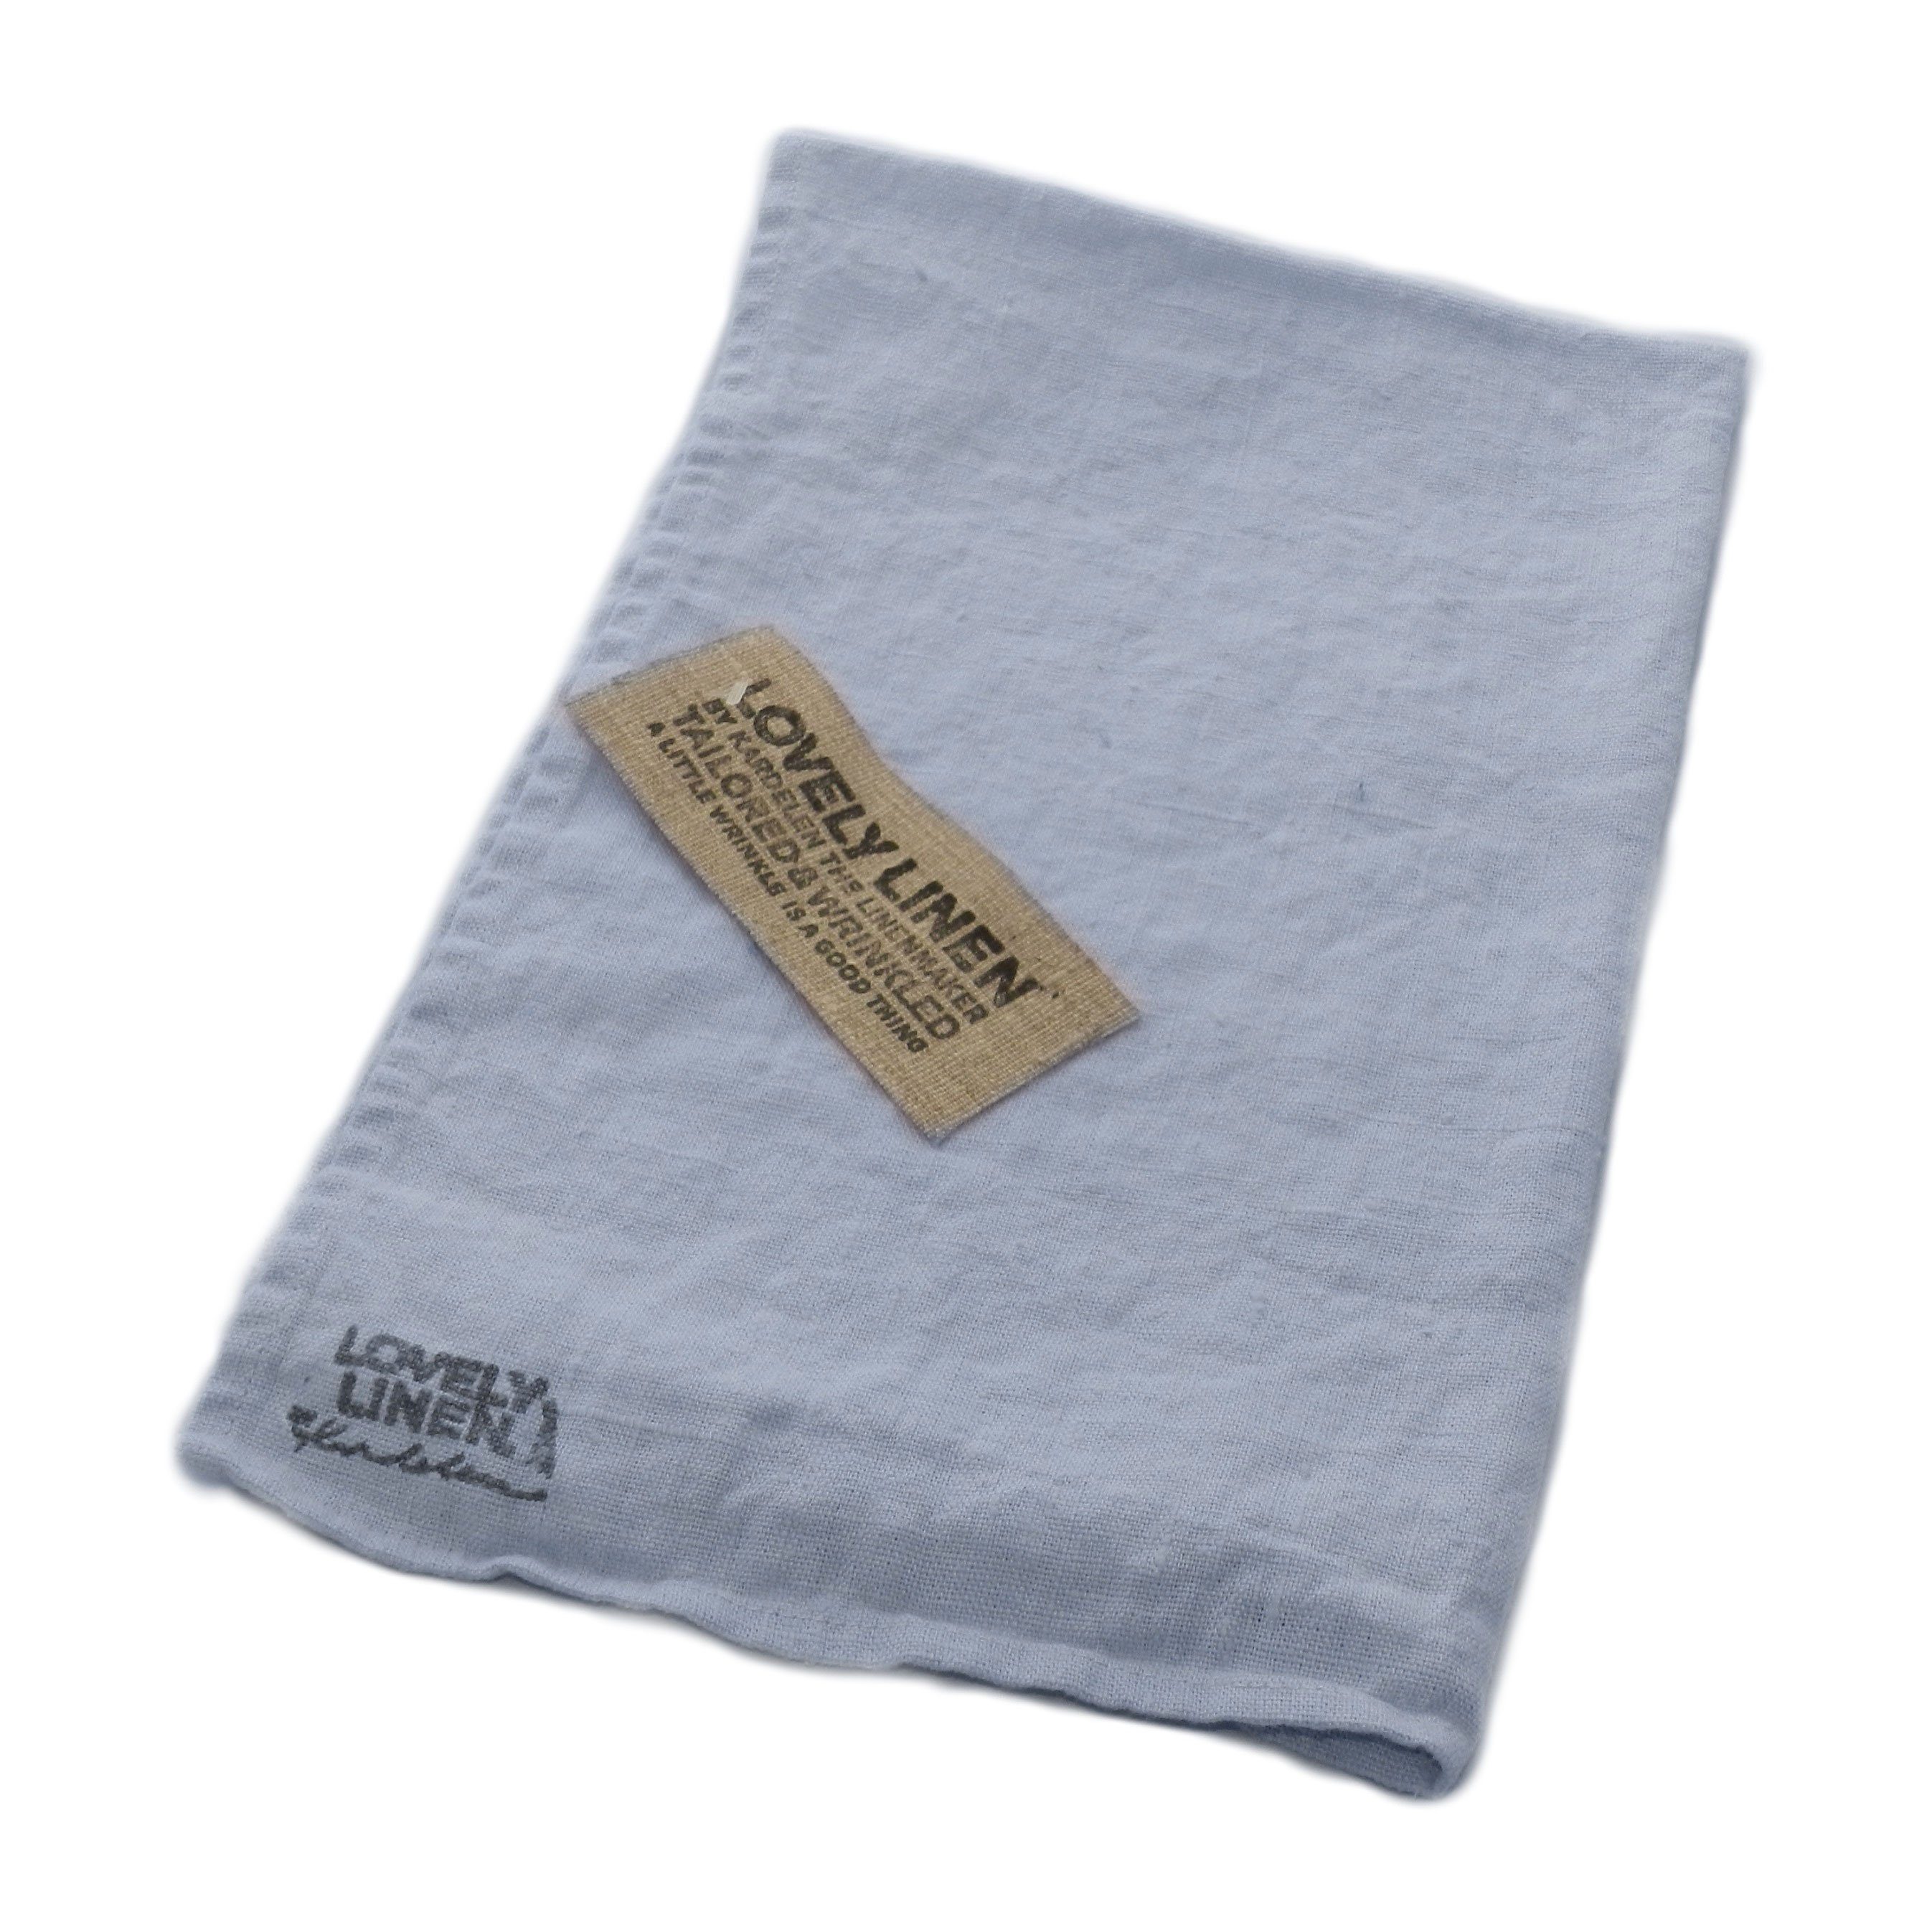 Lovely Linen Handtuch Lovely Linen Geschirrtuch 45 x 70 cm, 100% Leinen dusty blue